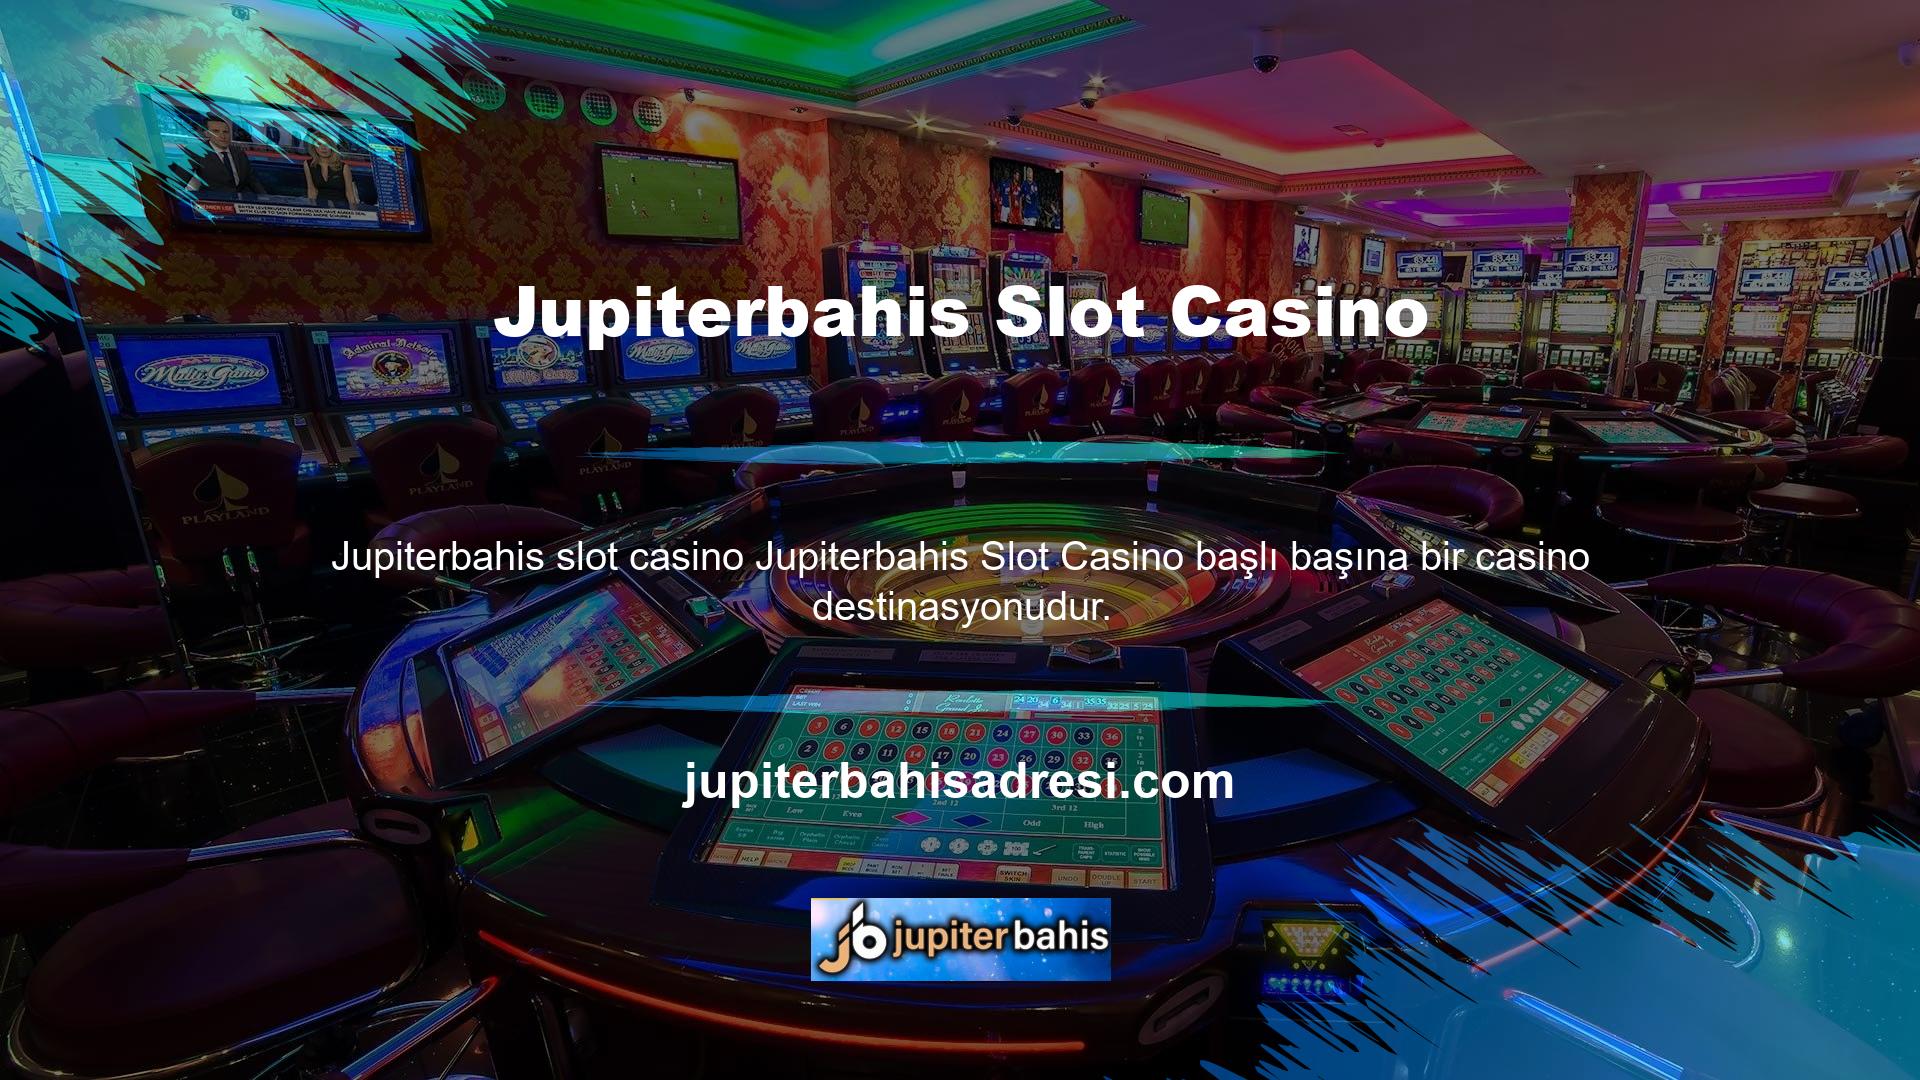 Slot makinesi eğlence endüstrisindeki en iyi oyundur ve casino sitelerine hakimdir